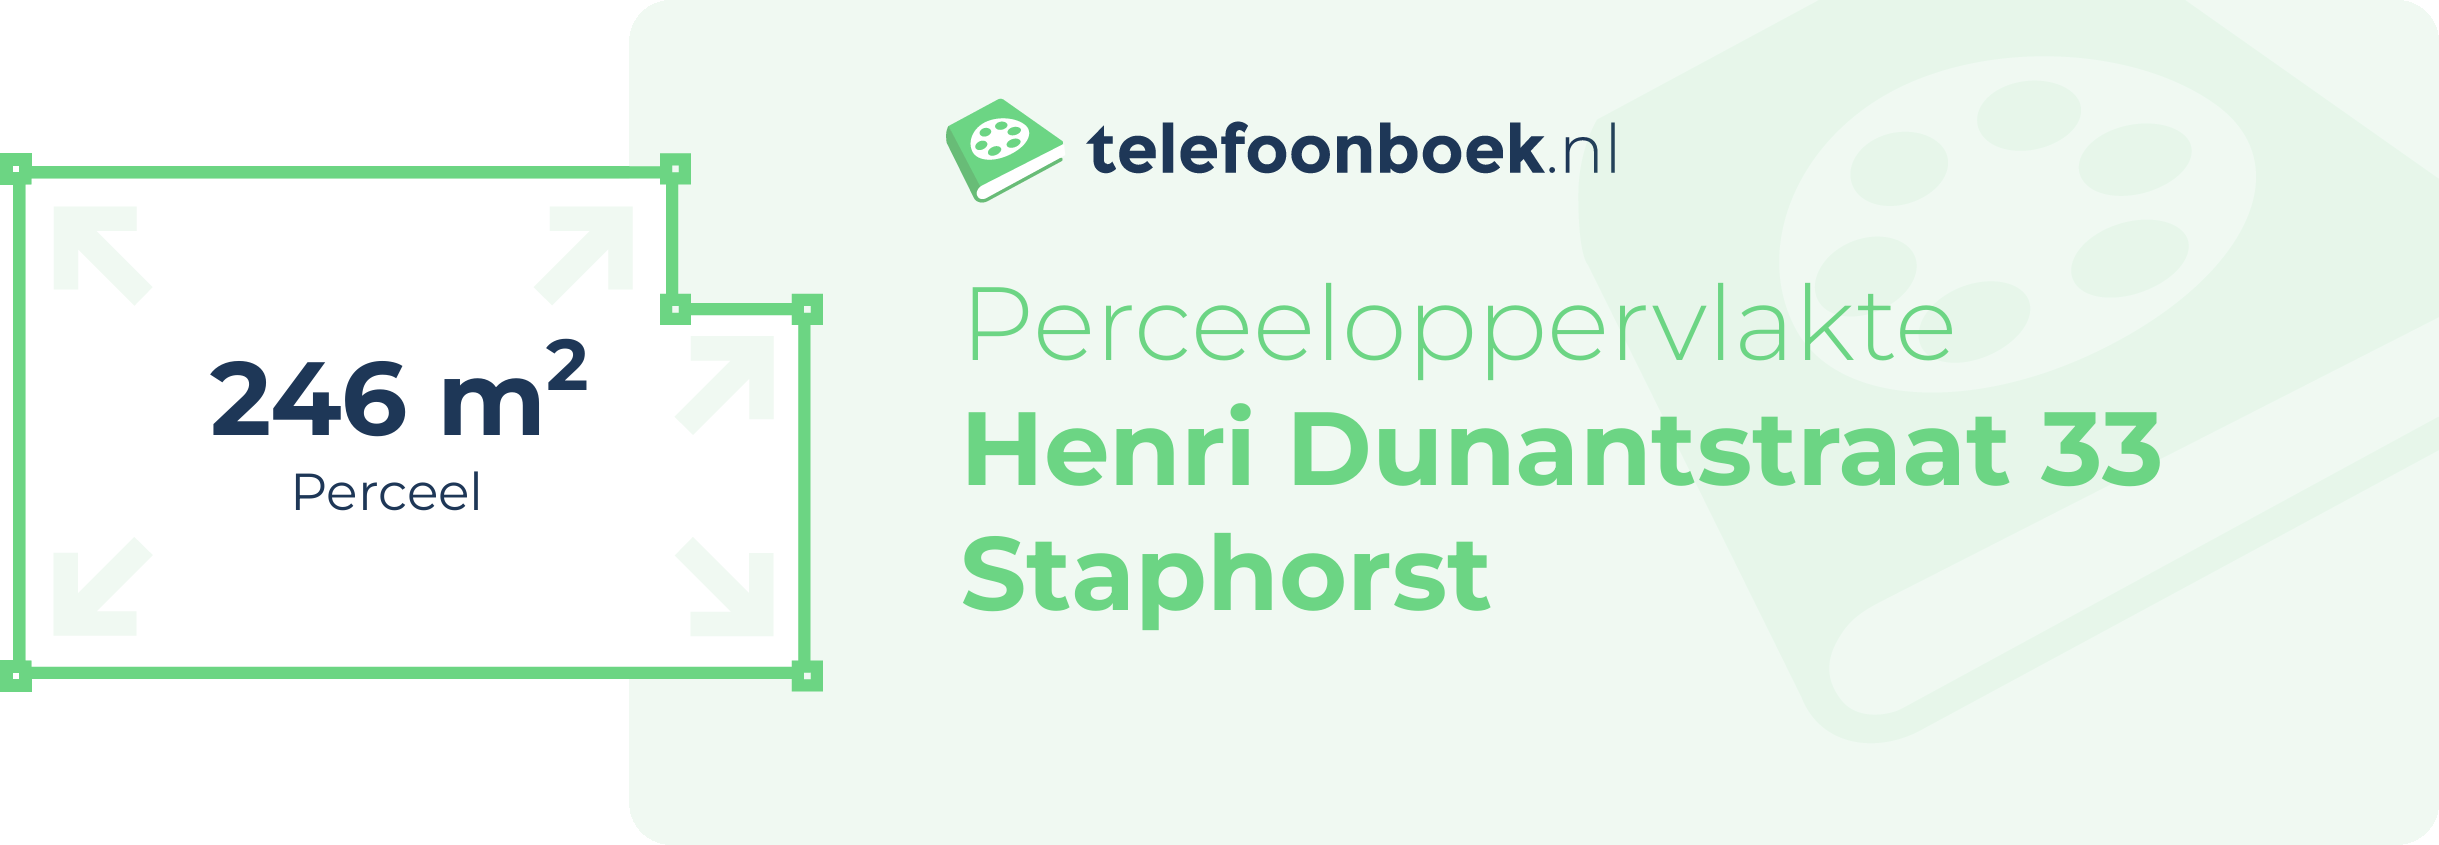 Perceeloppervlakte Henri Dunantstraat 33 Staphorst